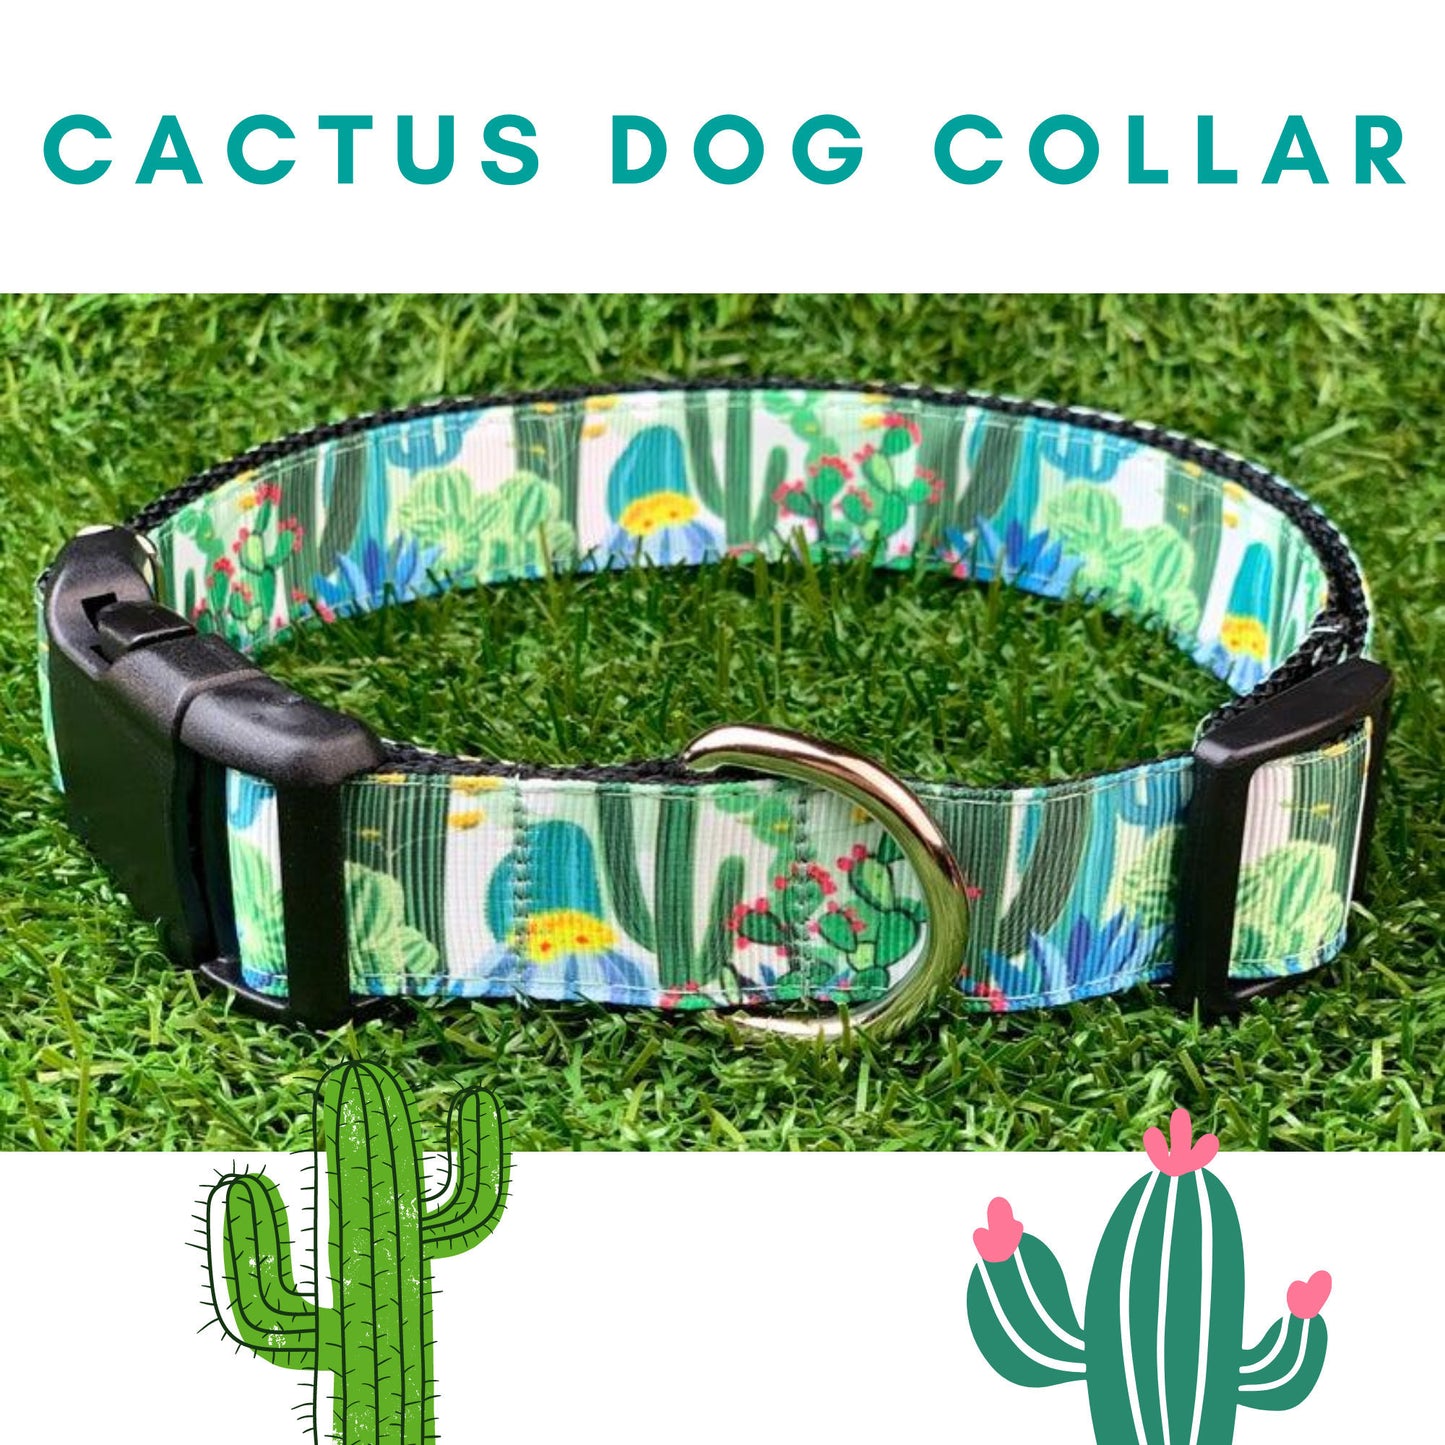 Wild Cactus Succulent Saguaro Dog Collar